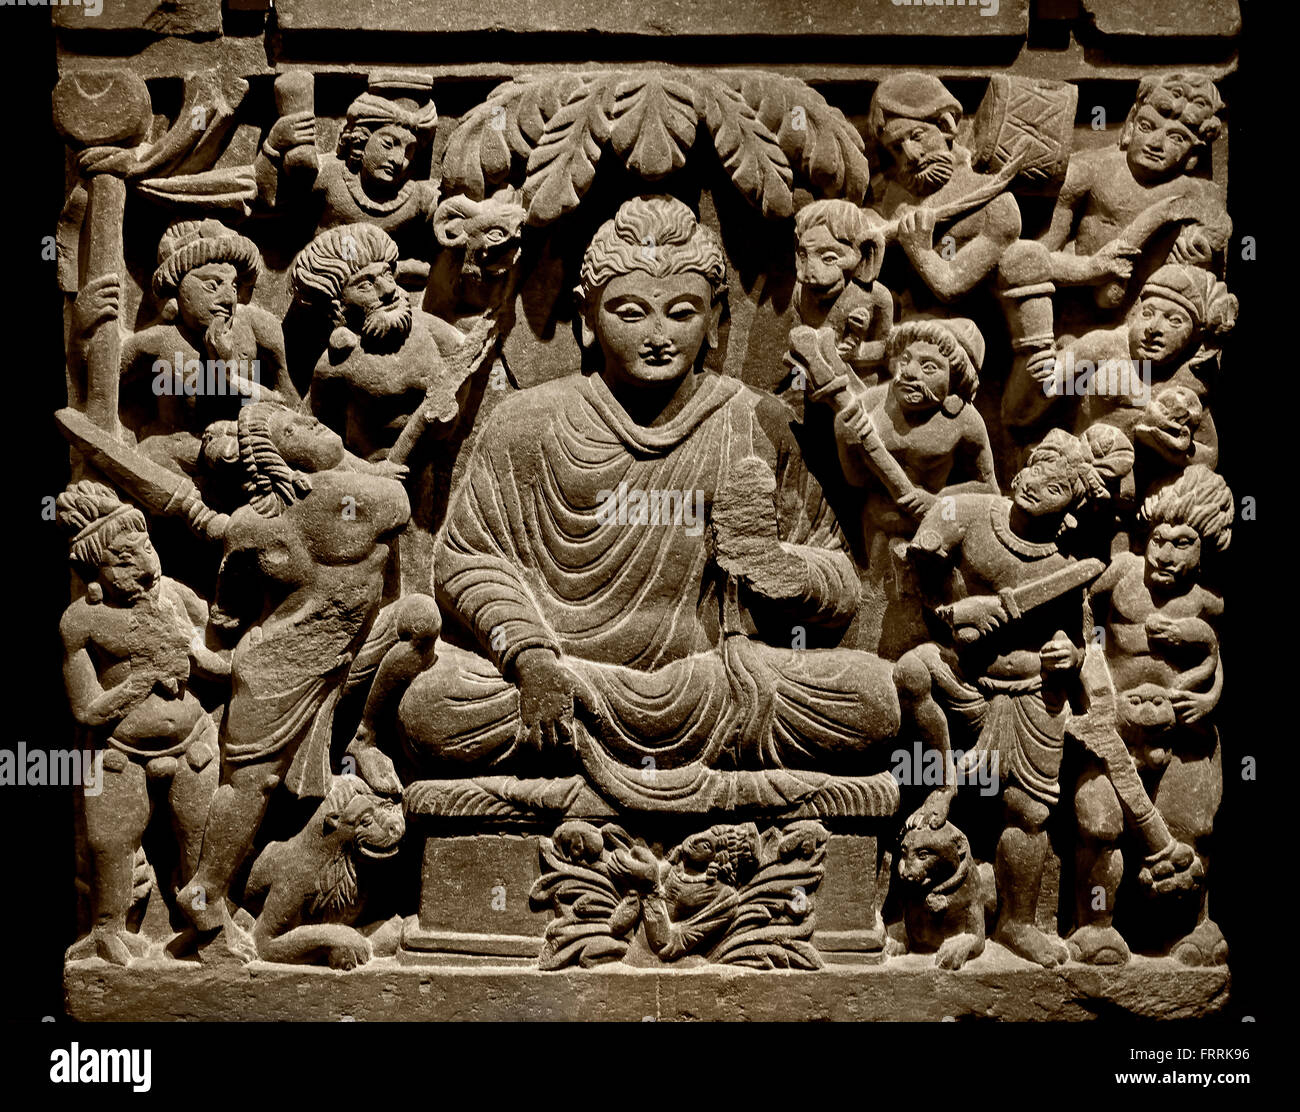 La vittoria di Mara in Bodhgaya, 2 - 3 ° secolo Northwestern Pakistan, scisto, Gandhara ( seduti sotto il Bodhi tree sconfigge eval e diventa ' risvegliato ' egli è ora il Buddha ) Foto Stock